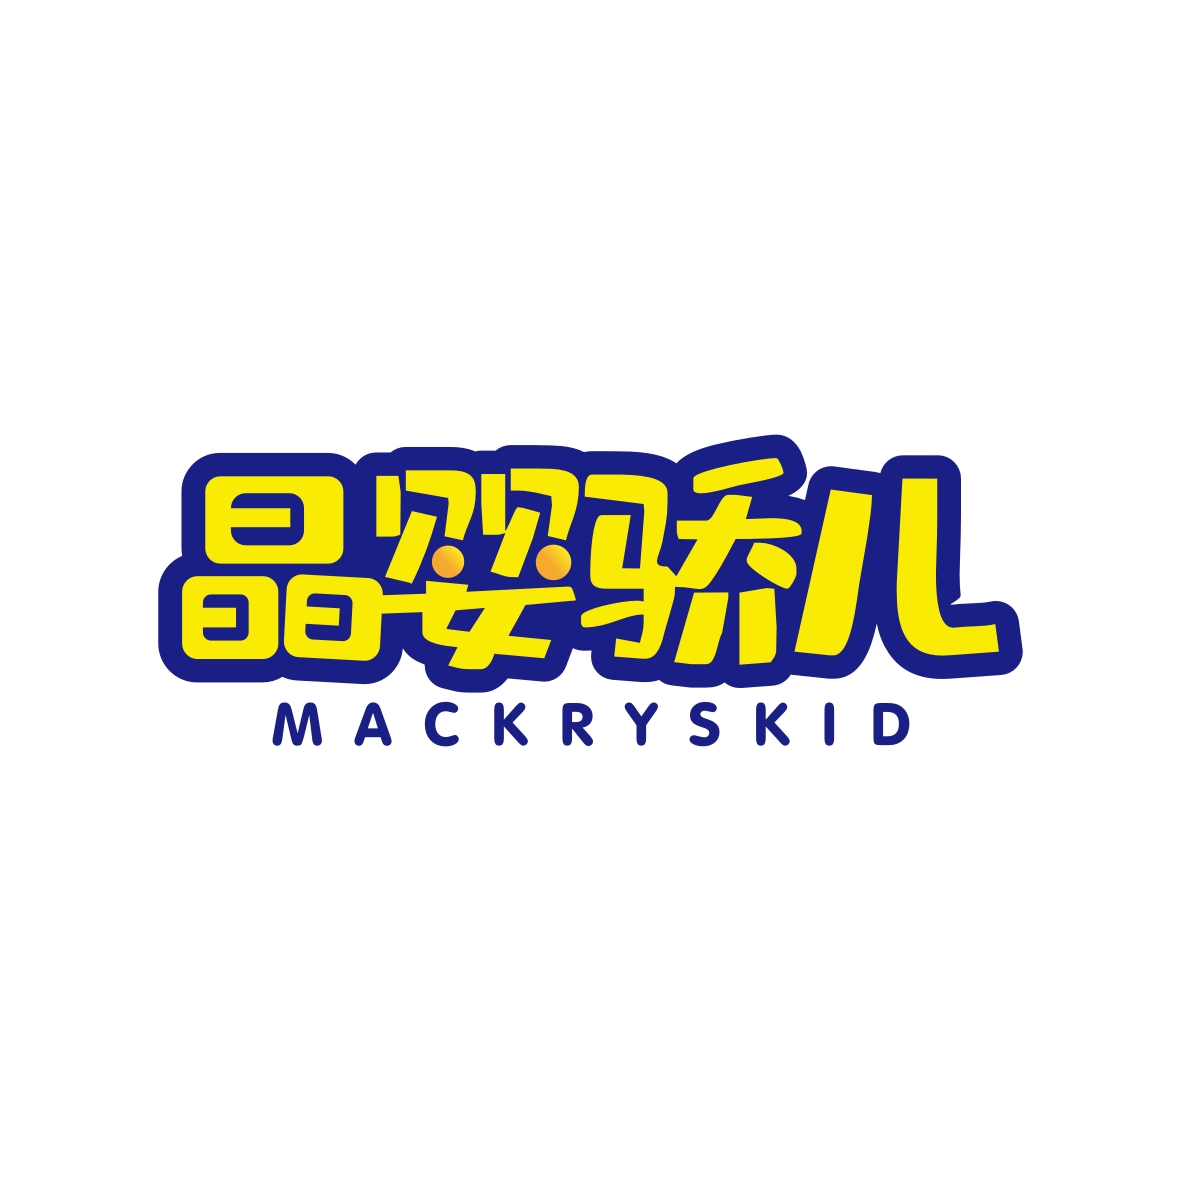 陶建军商标晶婴骄儿 MACKRYSKID（28类）商标转让流程及费用